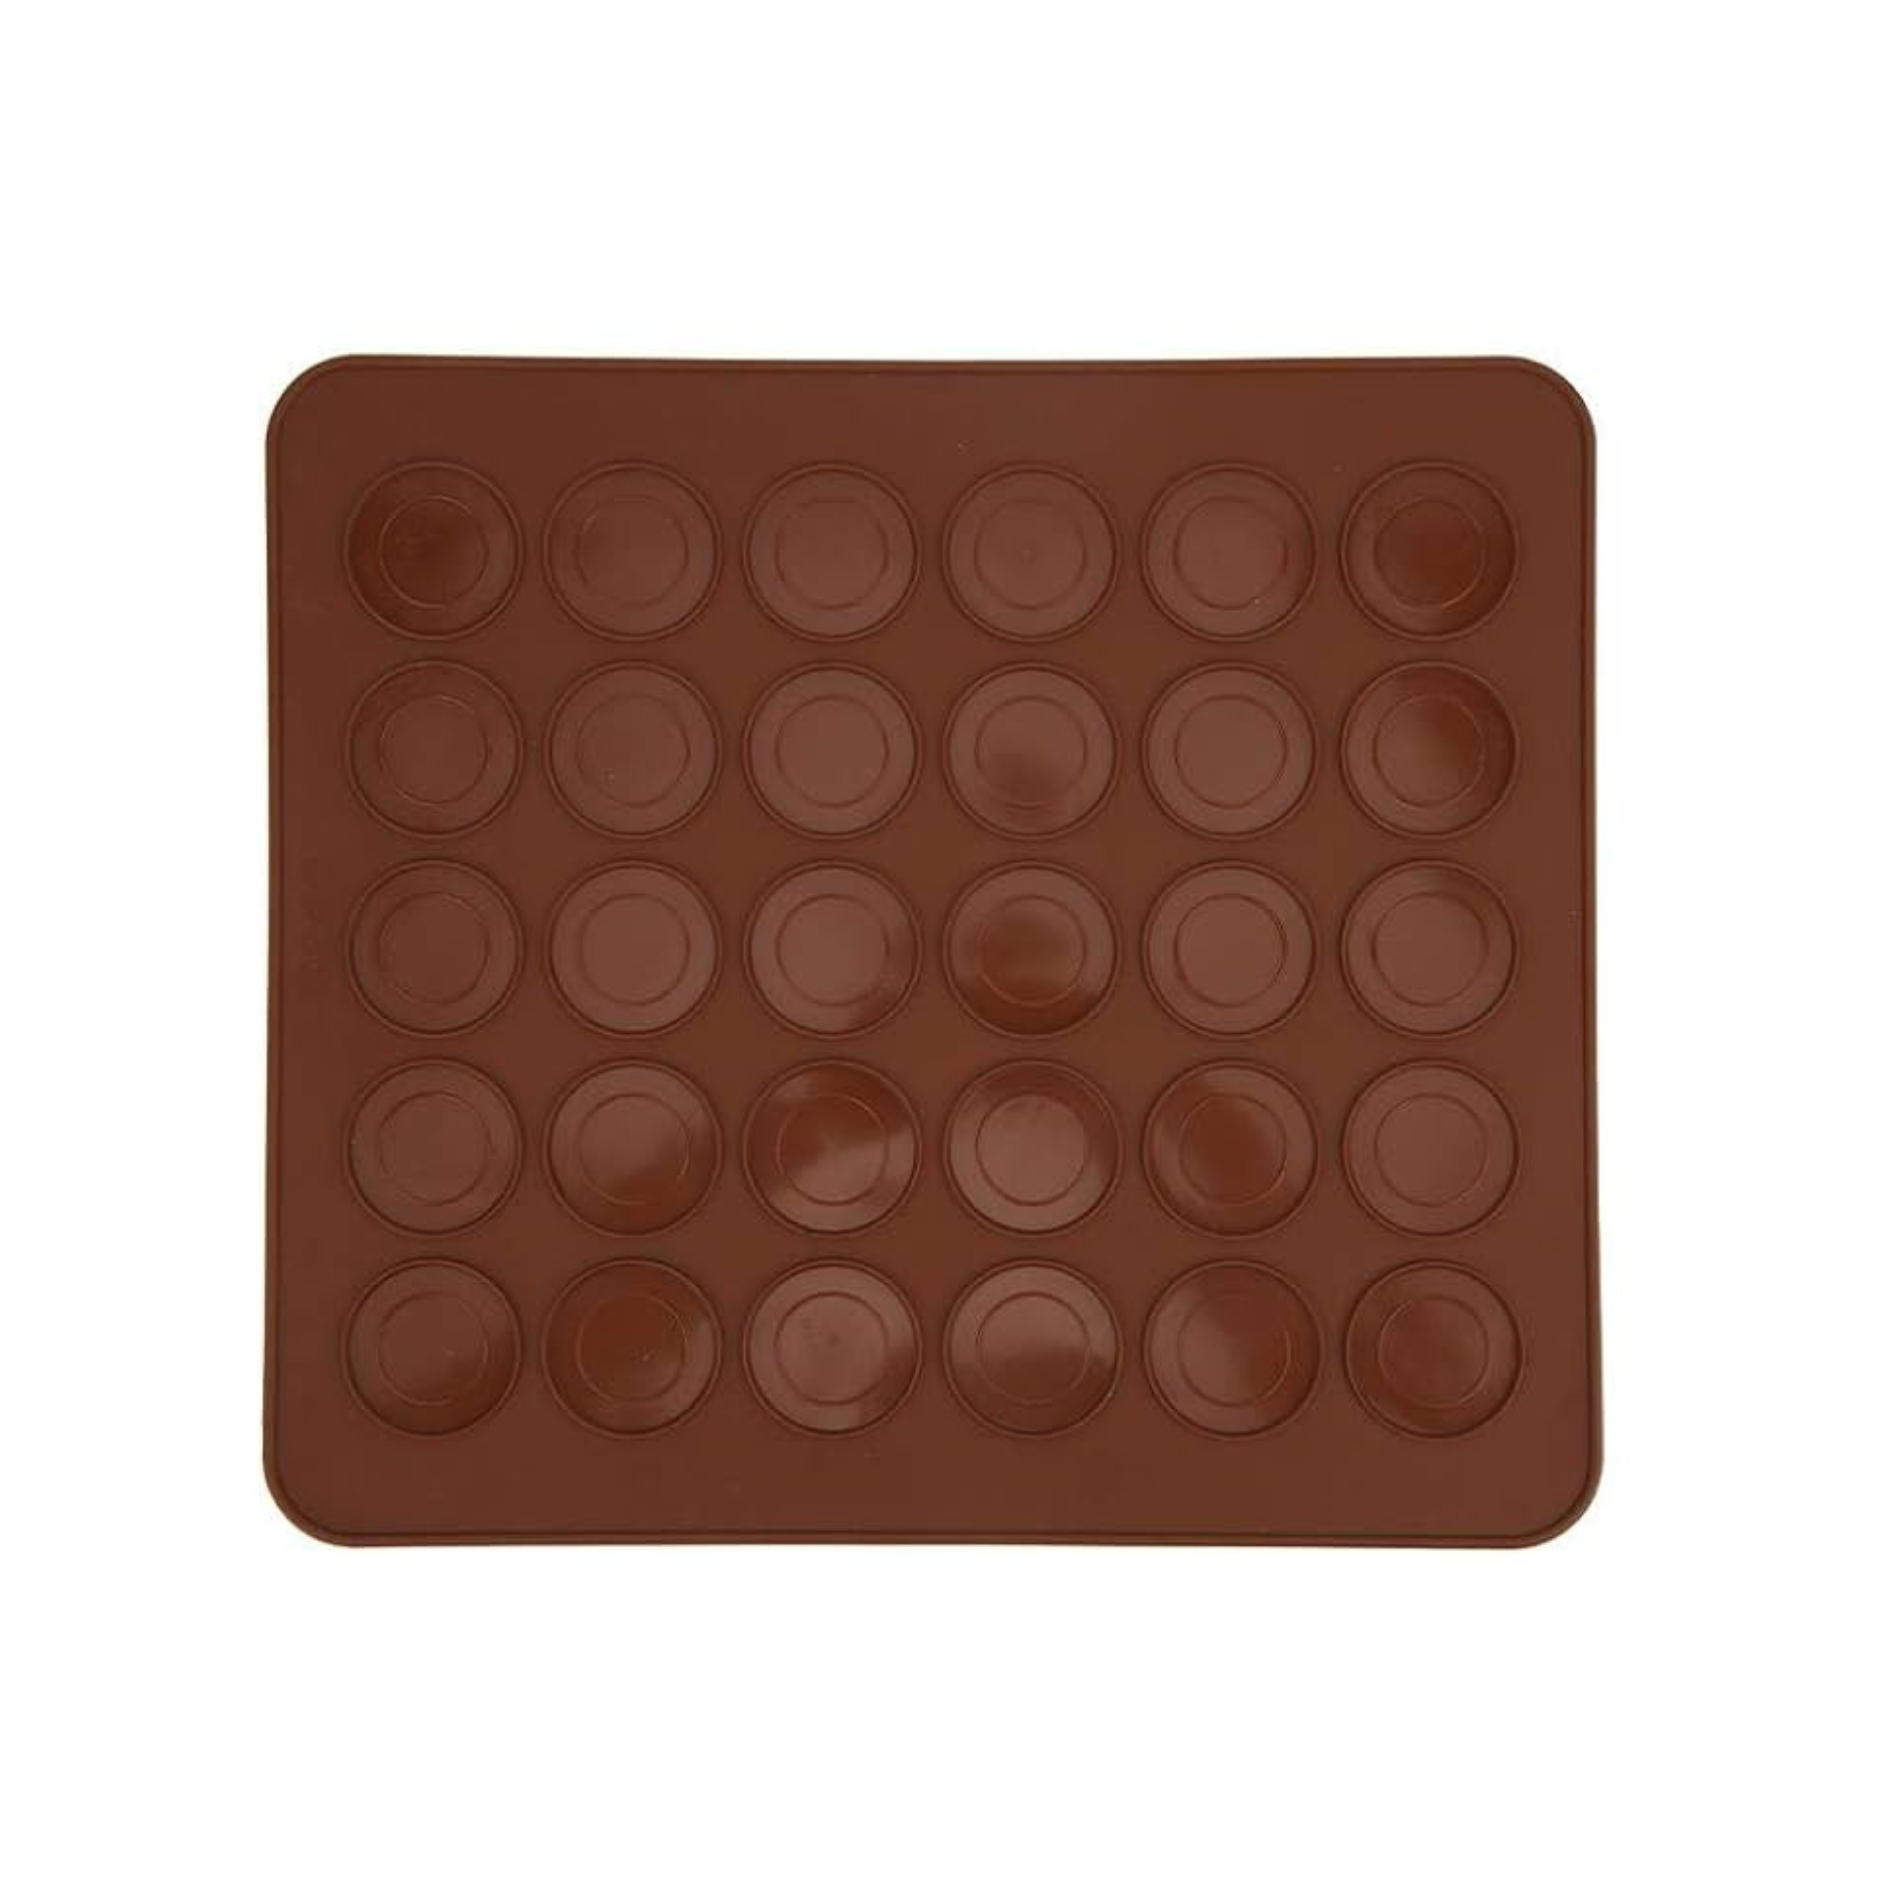 Baking Mix & Bakeware | Chocolate & Gold Macaron Recipe Making Kit | Foodie Gift Tin